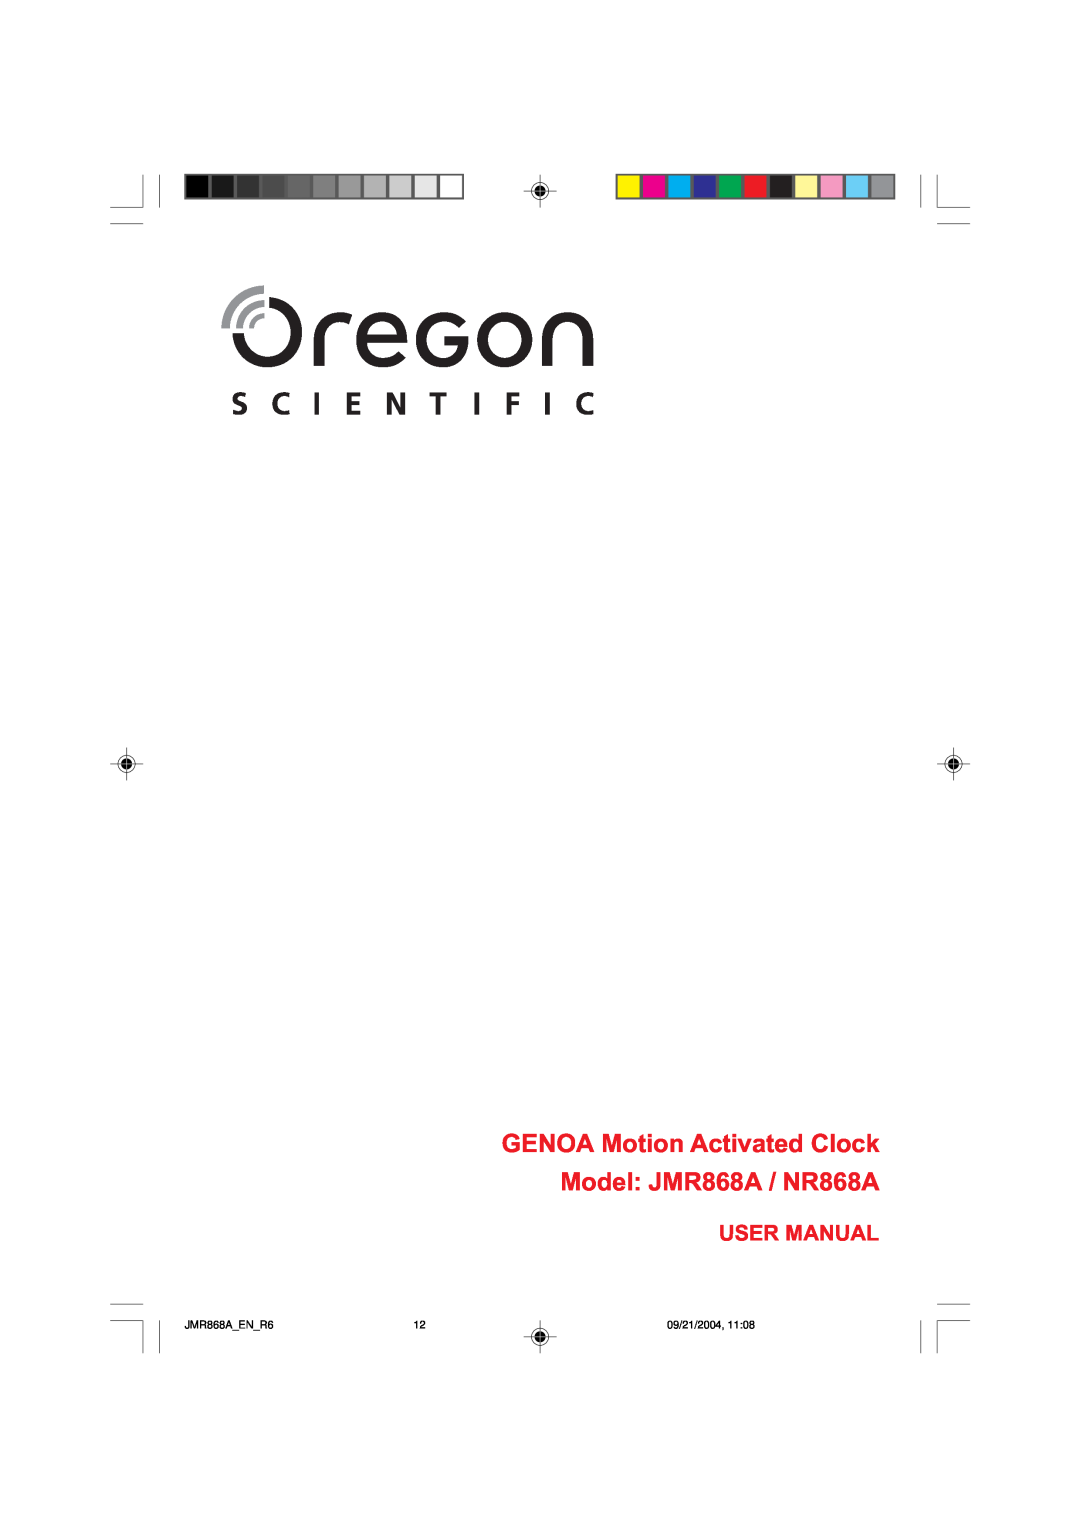 Oregon Scientific user manual GENOA Motion Activated Clock Model JMR868A / NR868A, User Manual, JMR868AENR6, 09/21/2004 